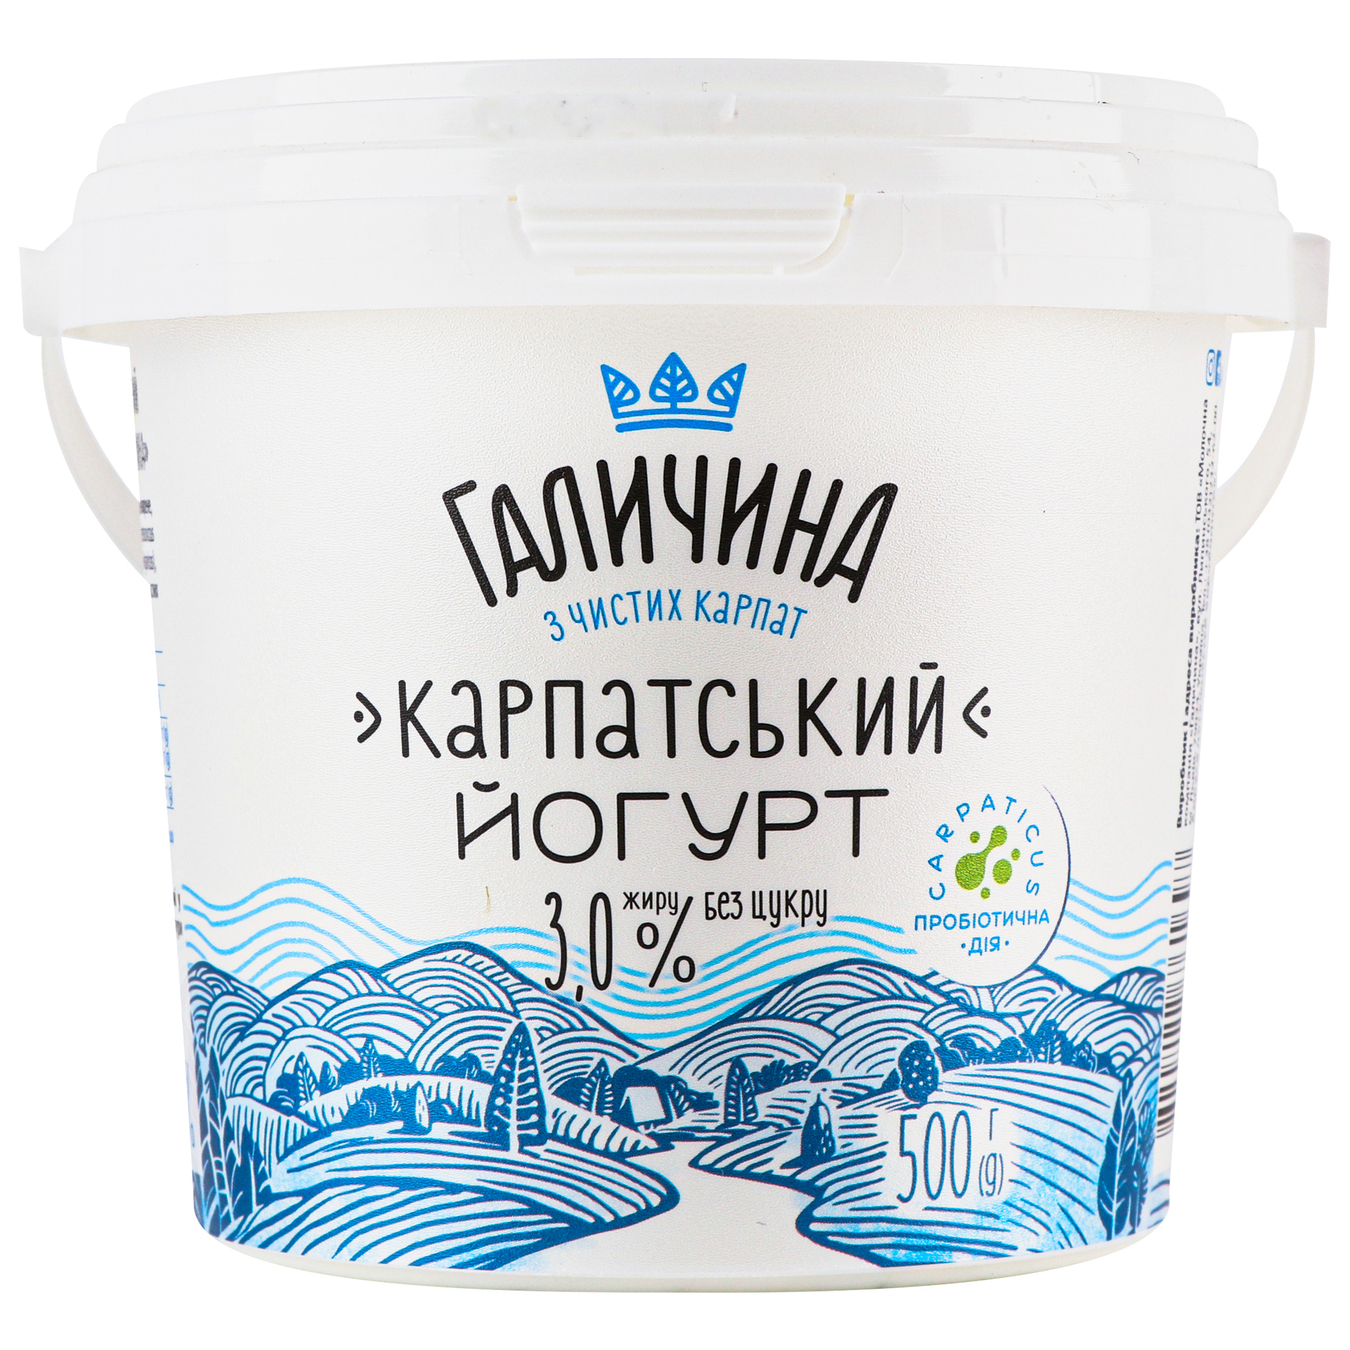 Yogurt Galychyna Carpathian sugar-free 3% 500g